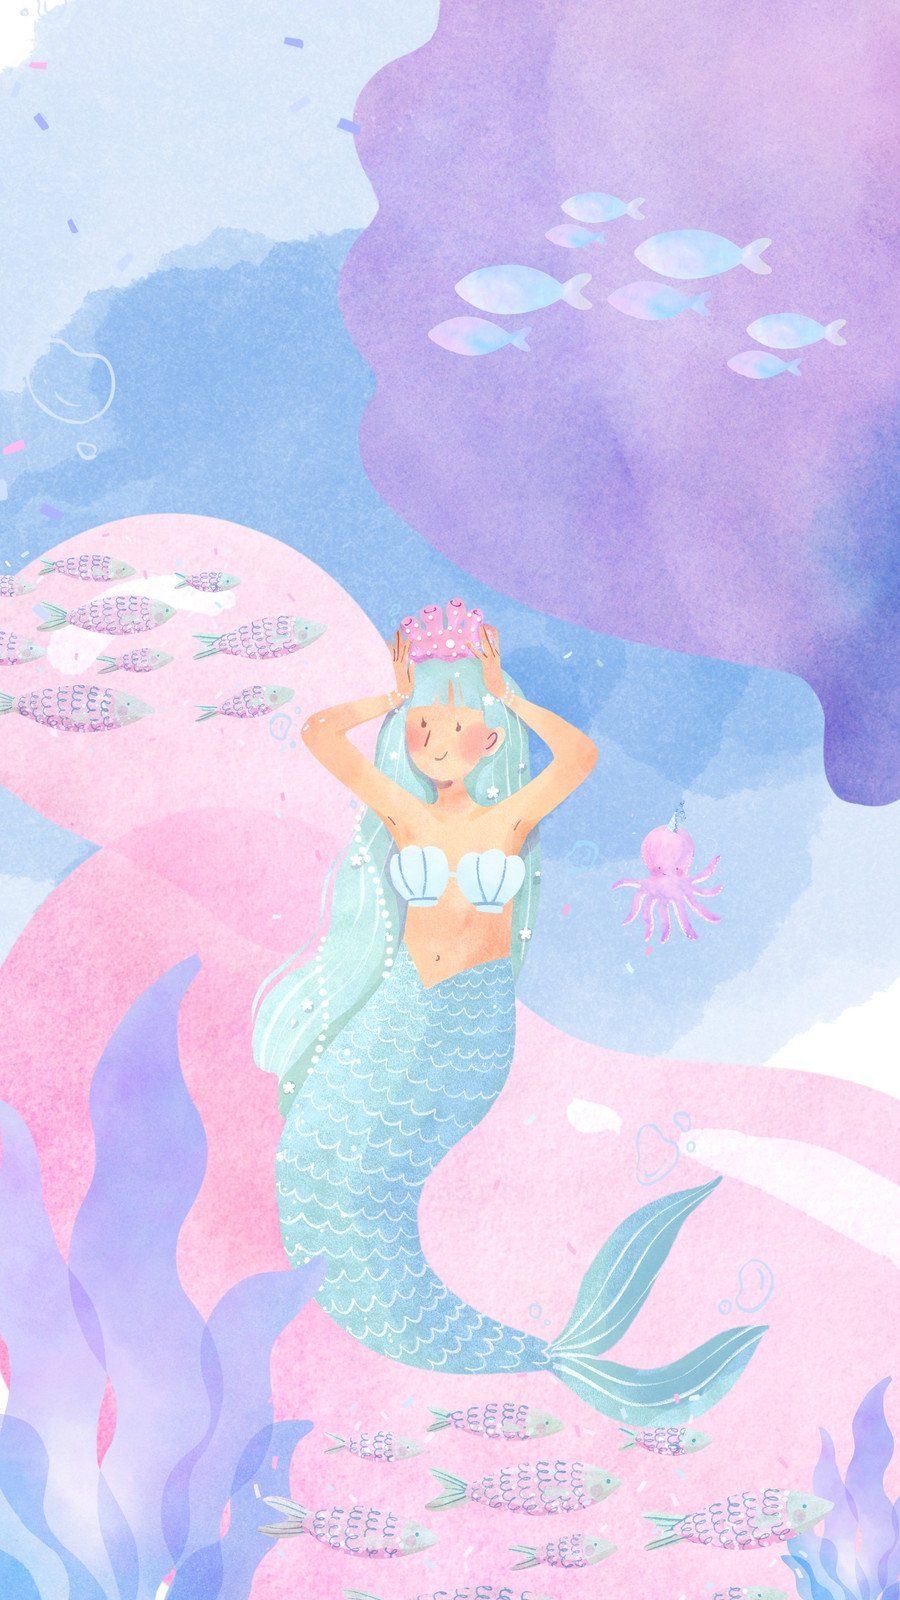 A mermaid is sitting on the bottom of an ocean - Mermaid